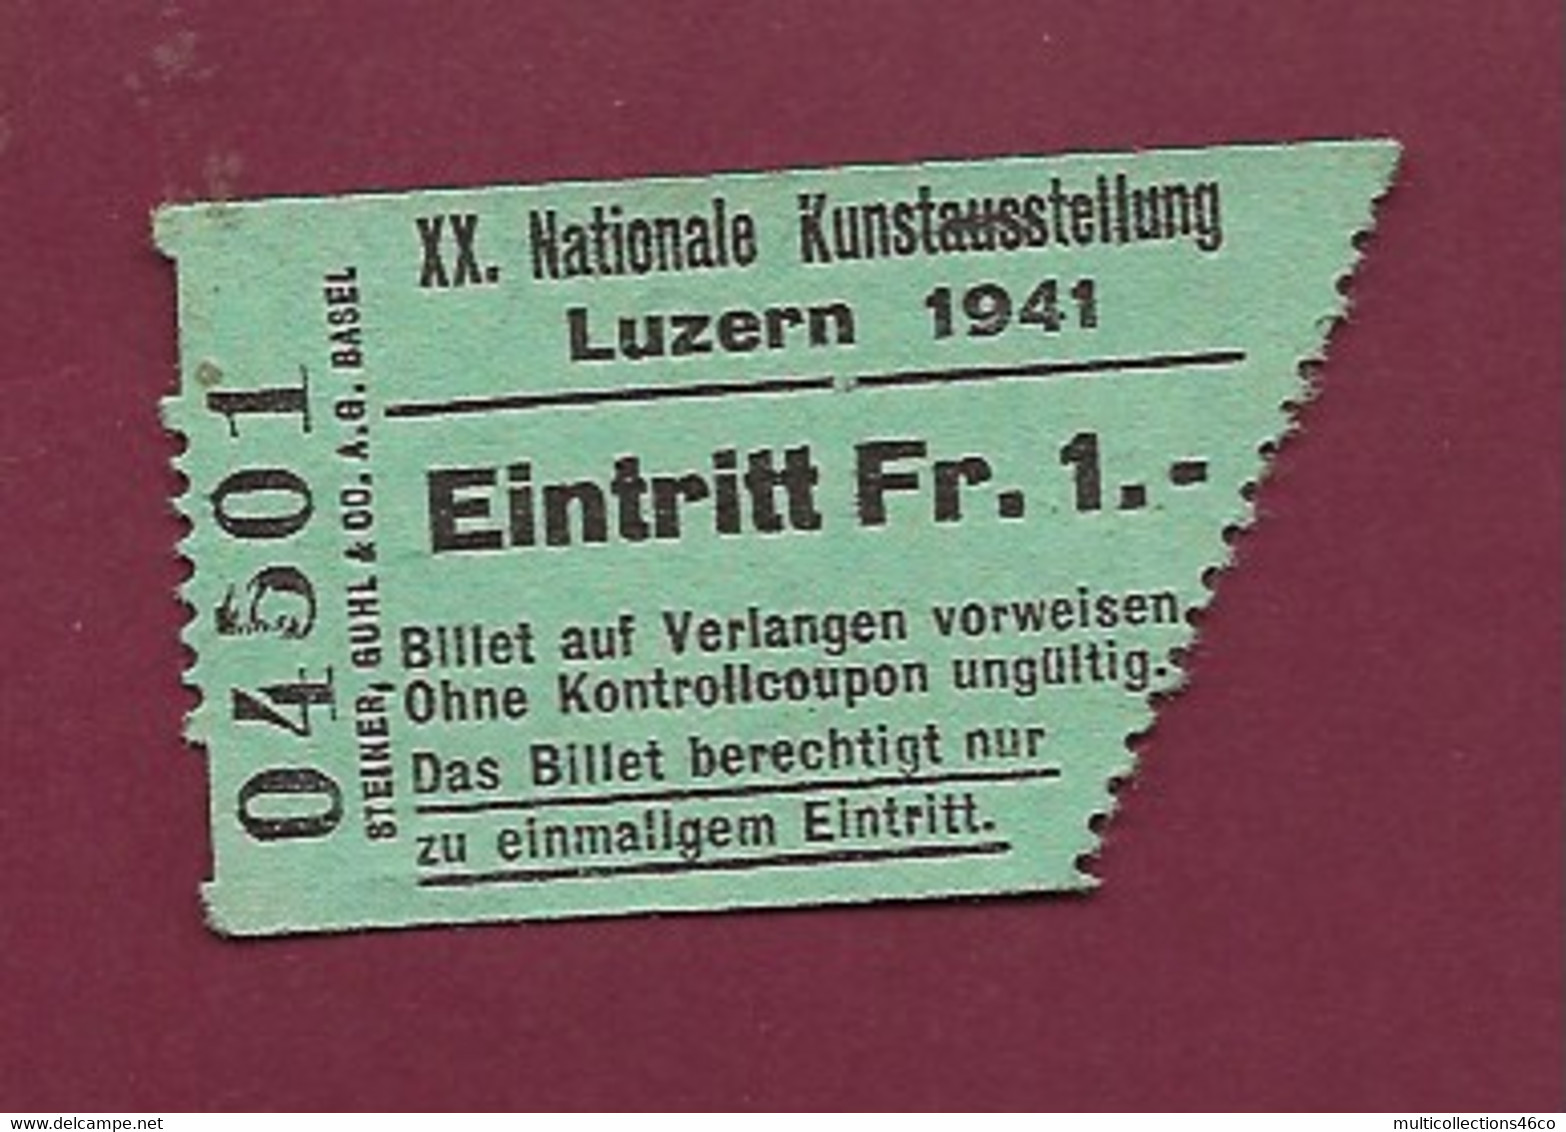 051120 - TICKET TRANSPORT SUISSE - LUZERN 1941 XX Nationale Kunstausstellung Eintritt FR 1 04501 - Welt